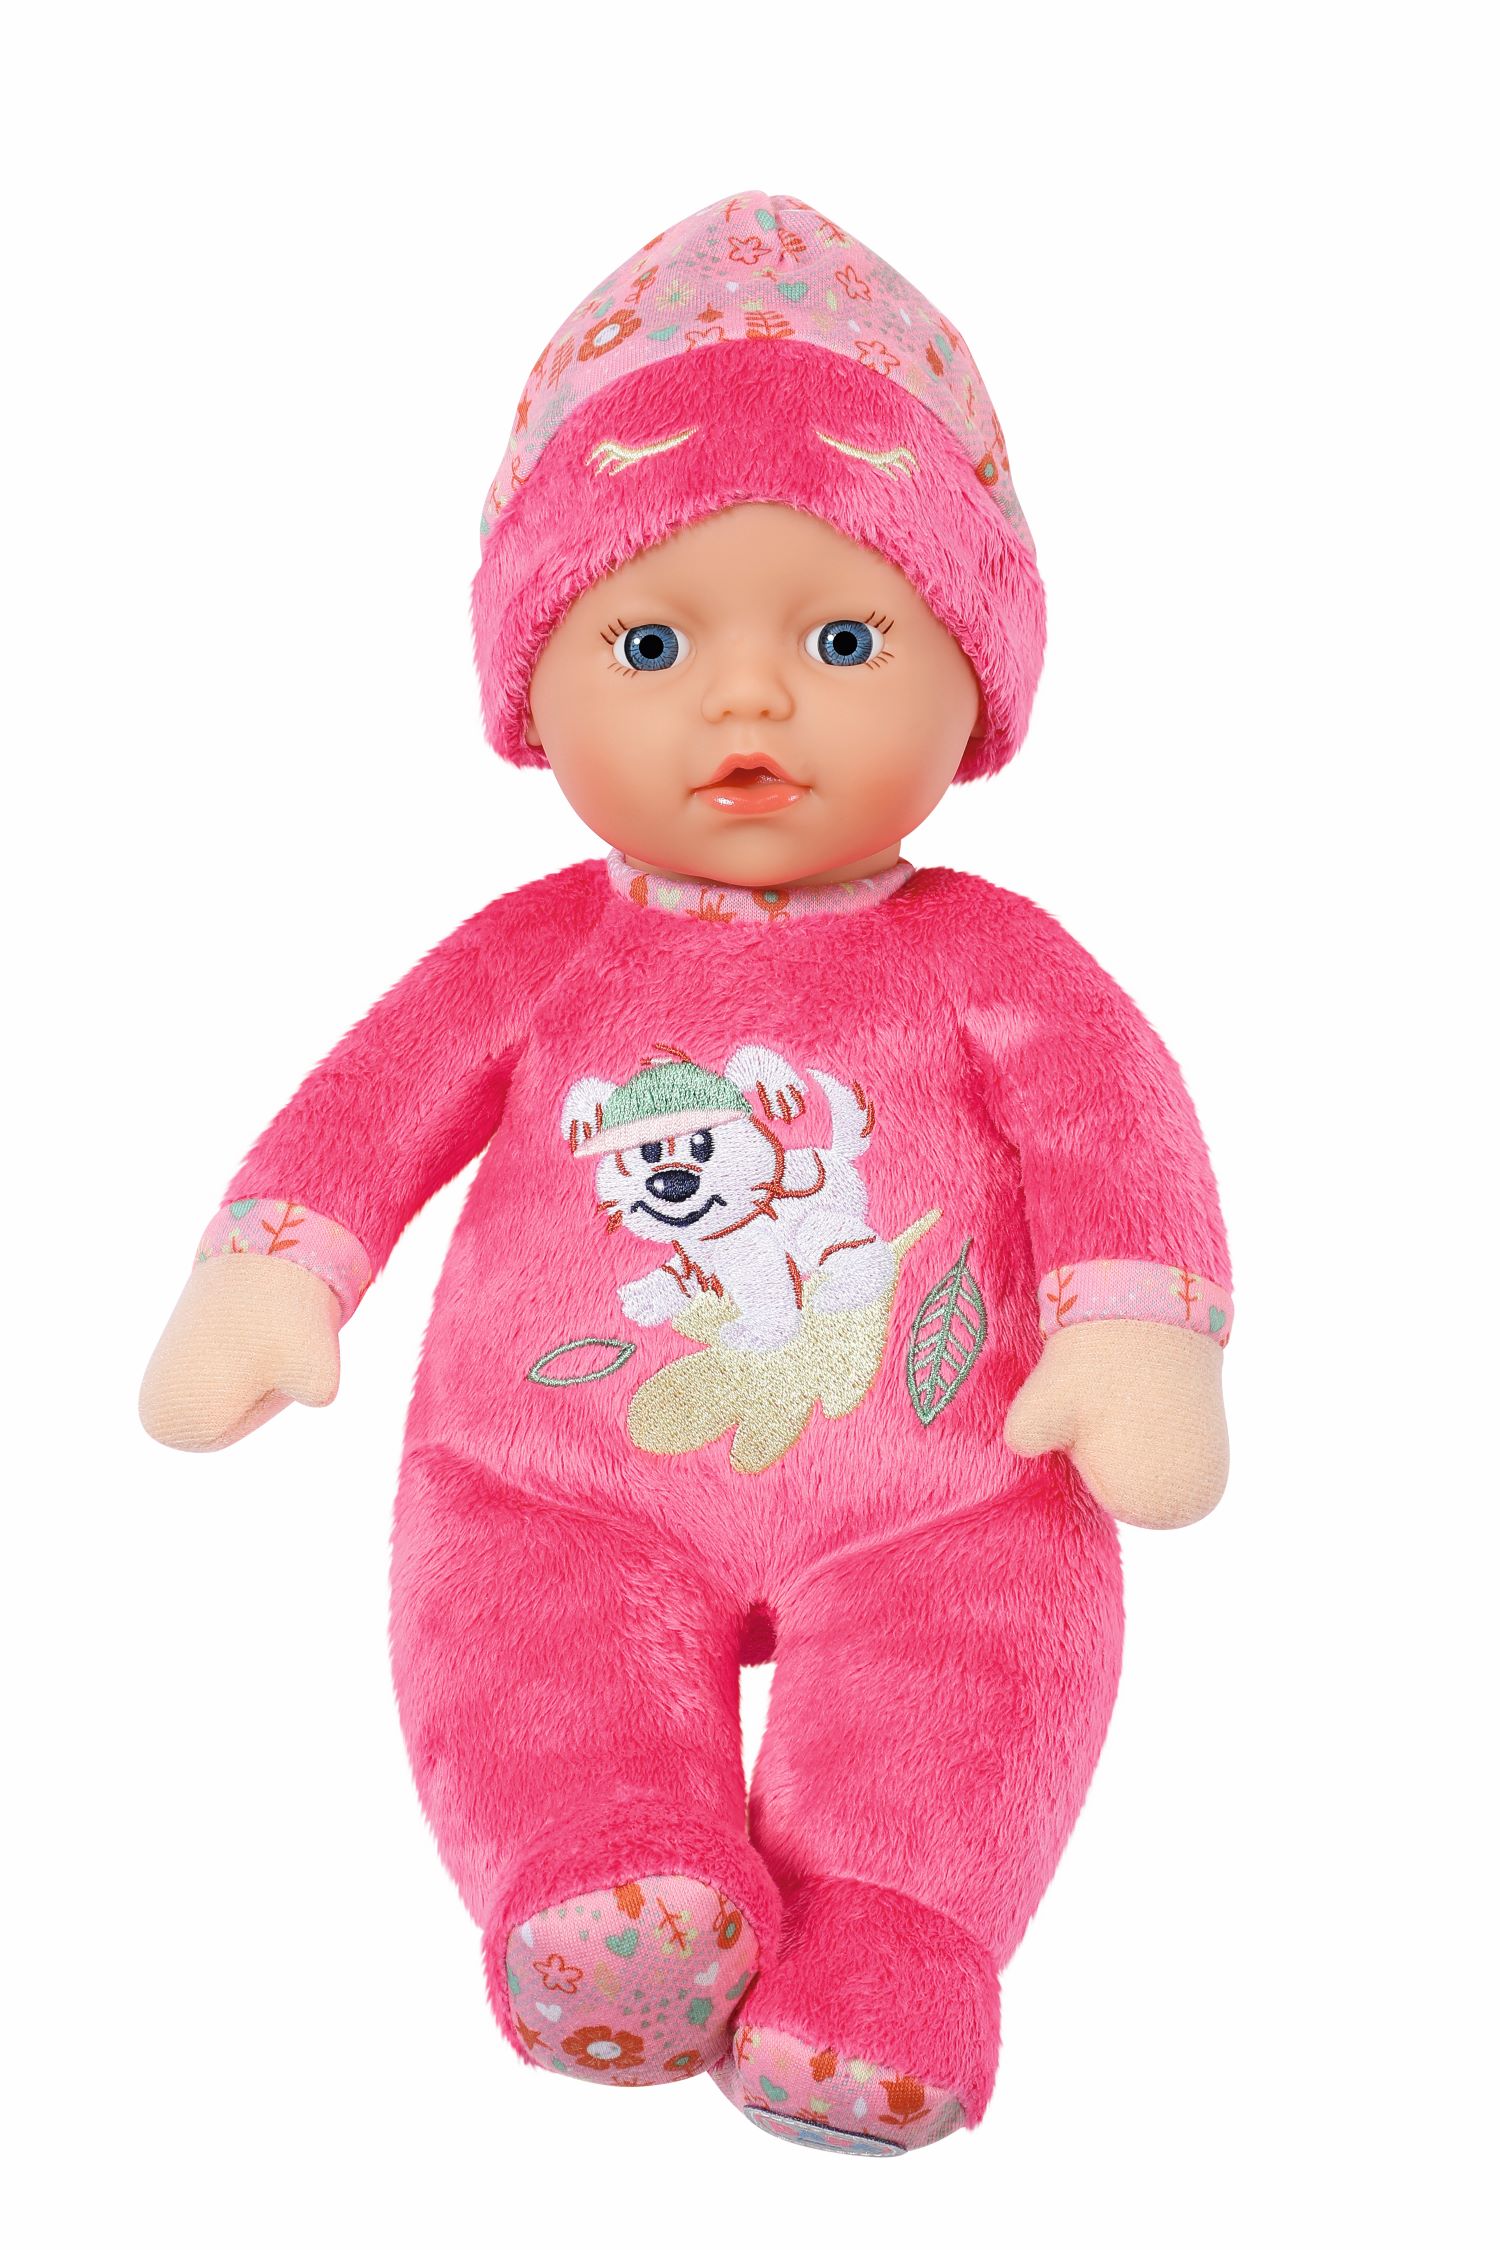 Baby Born - Alvó barát baba, rózsaszín ruhás 30 cm-es